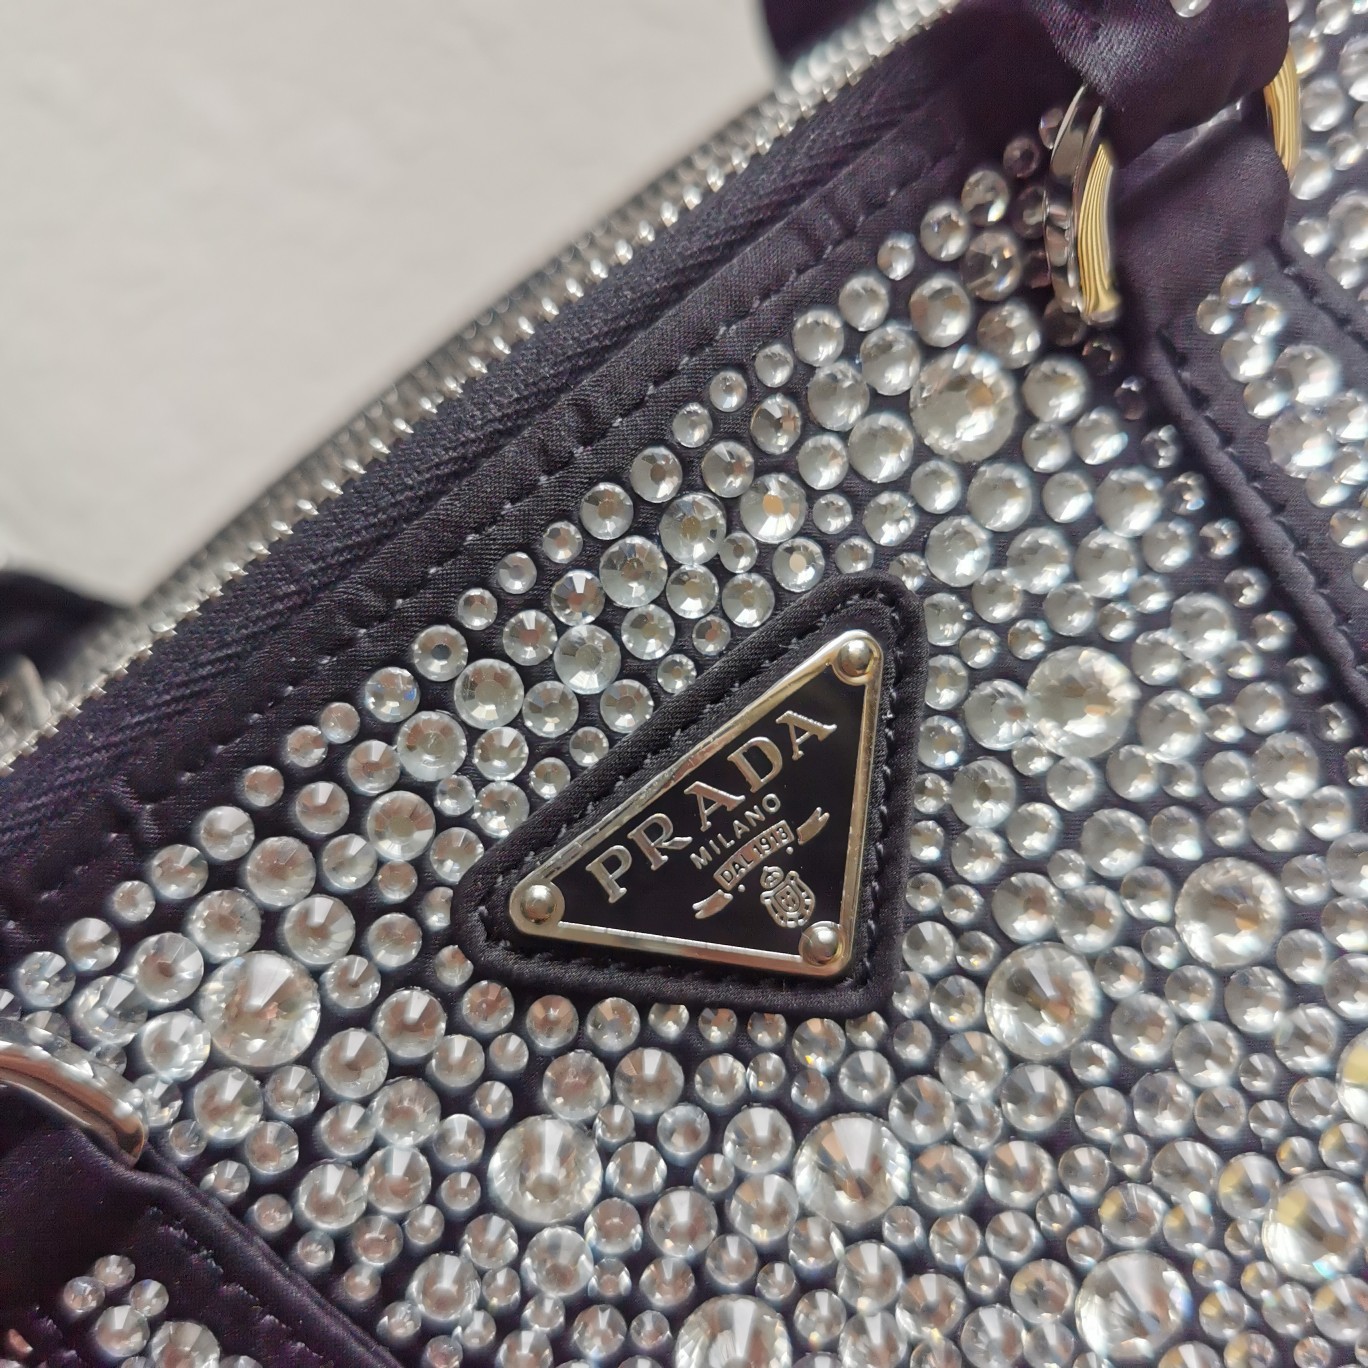 A bag Galleria Saffiano Leather Tote 1BA896 24.5 cm фото 5